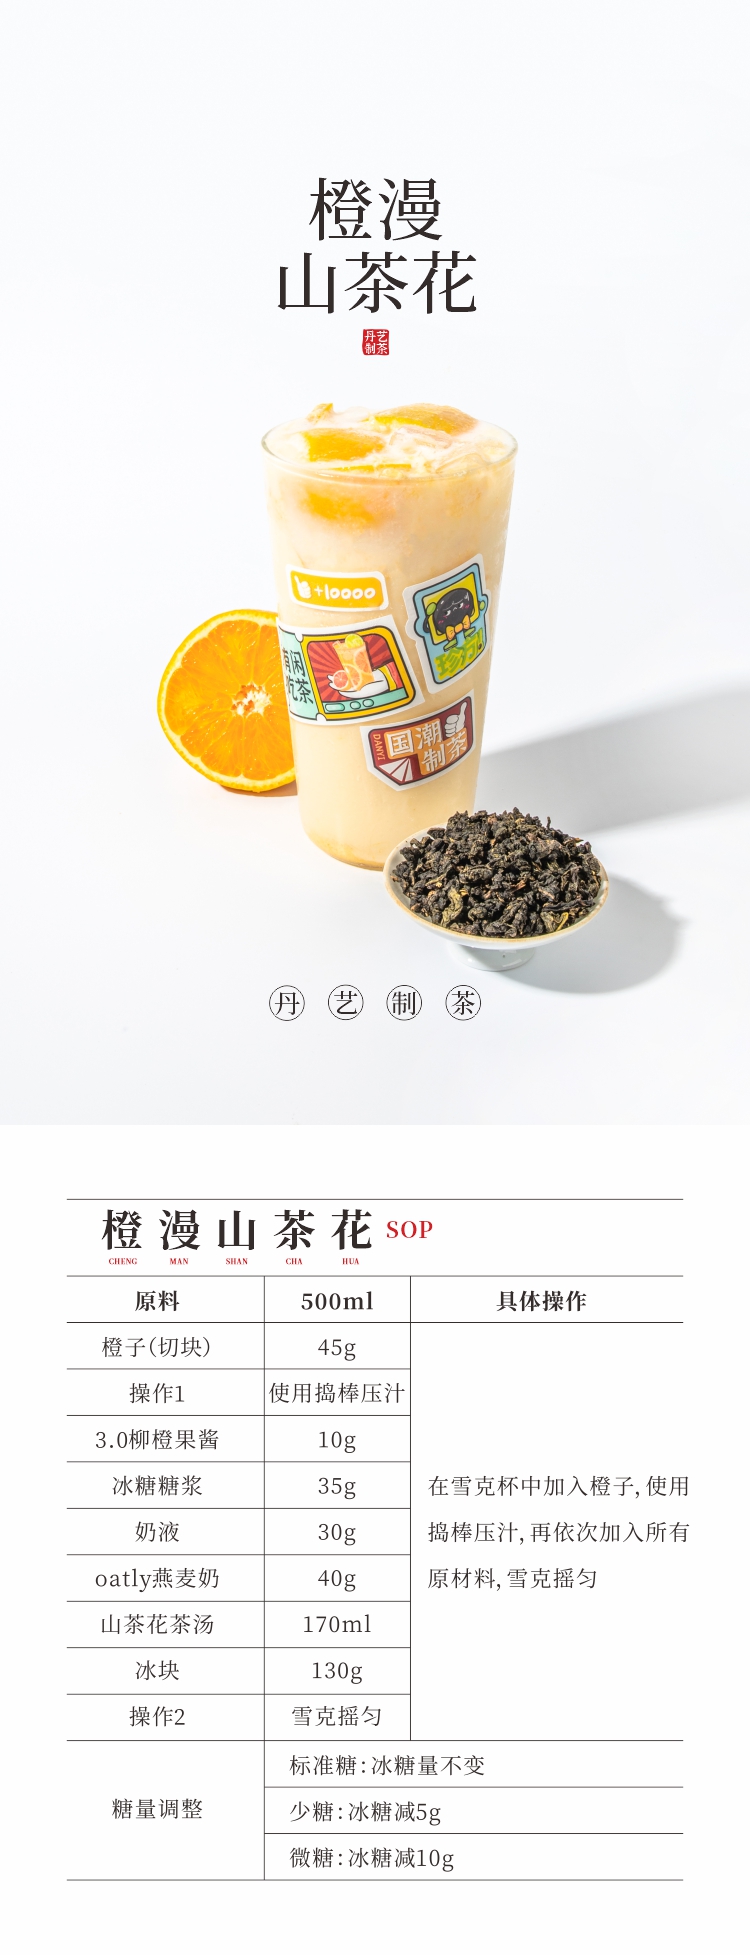 丹艺山茶花奇兰乌龙茶250g